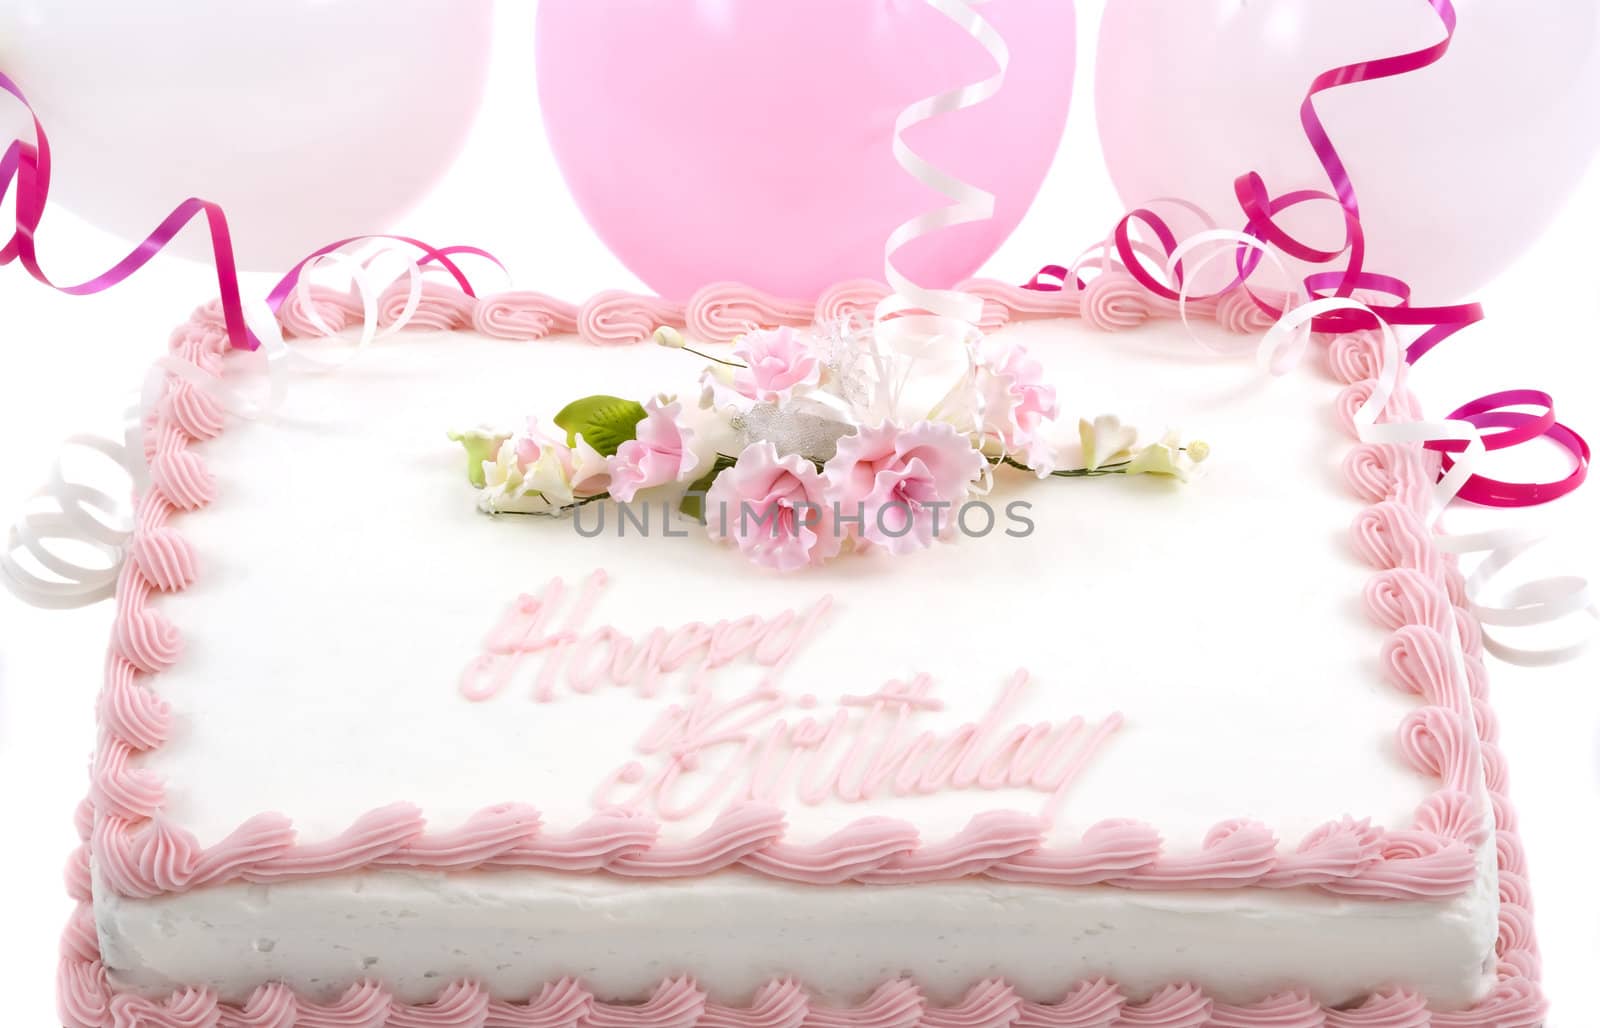 Birthday Cake by BVDC